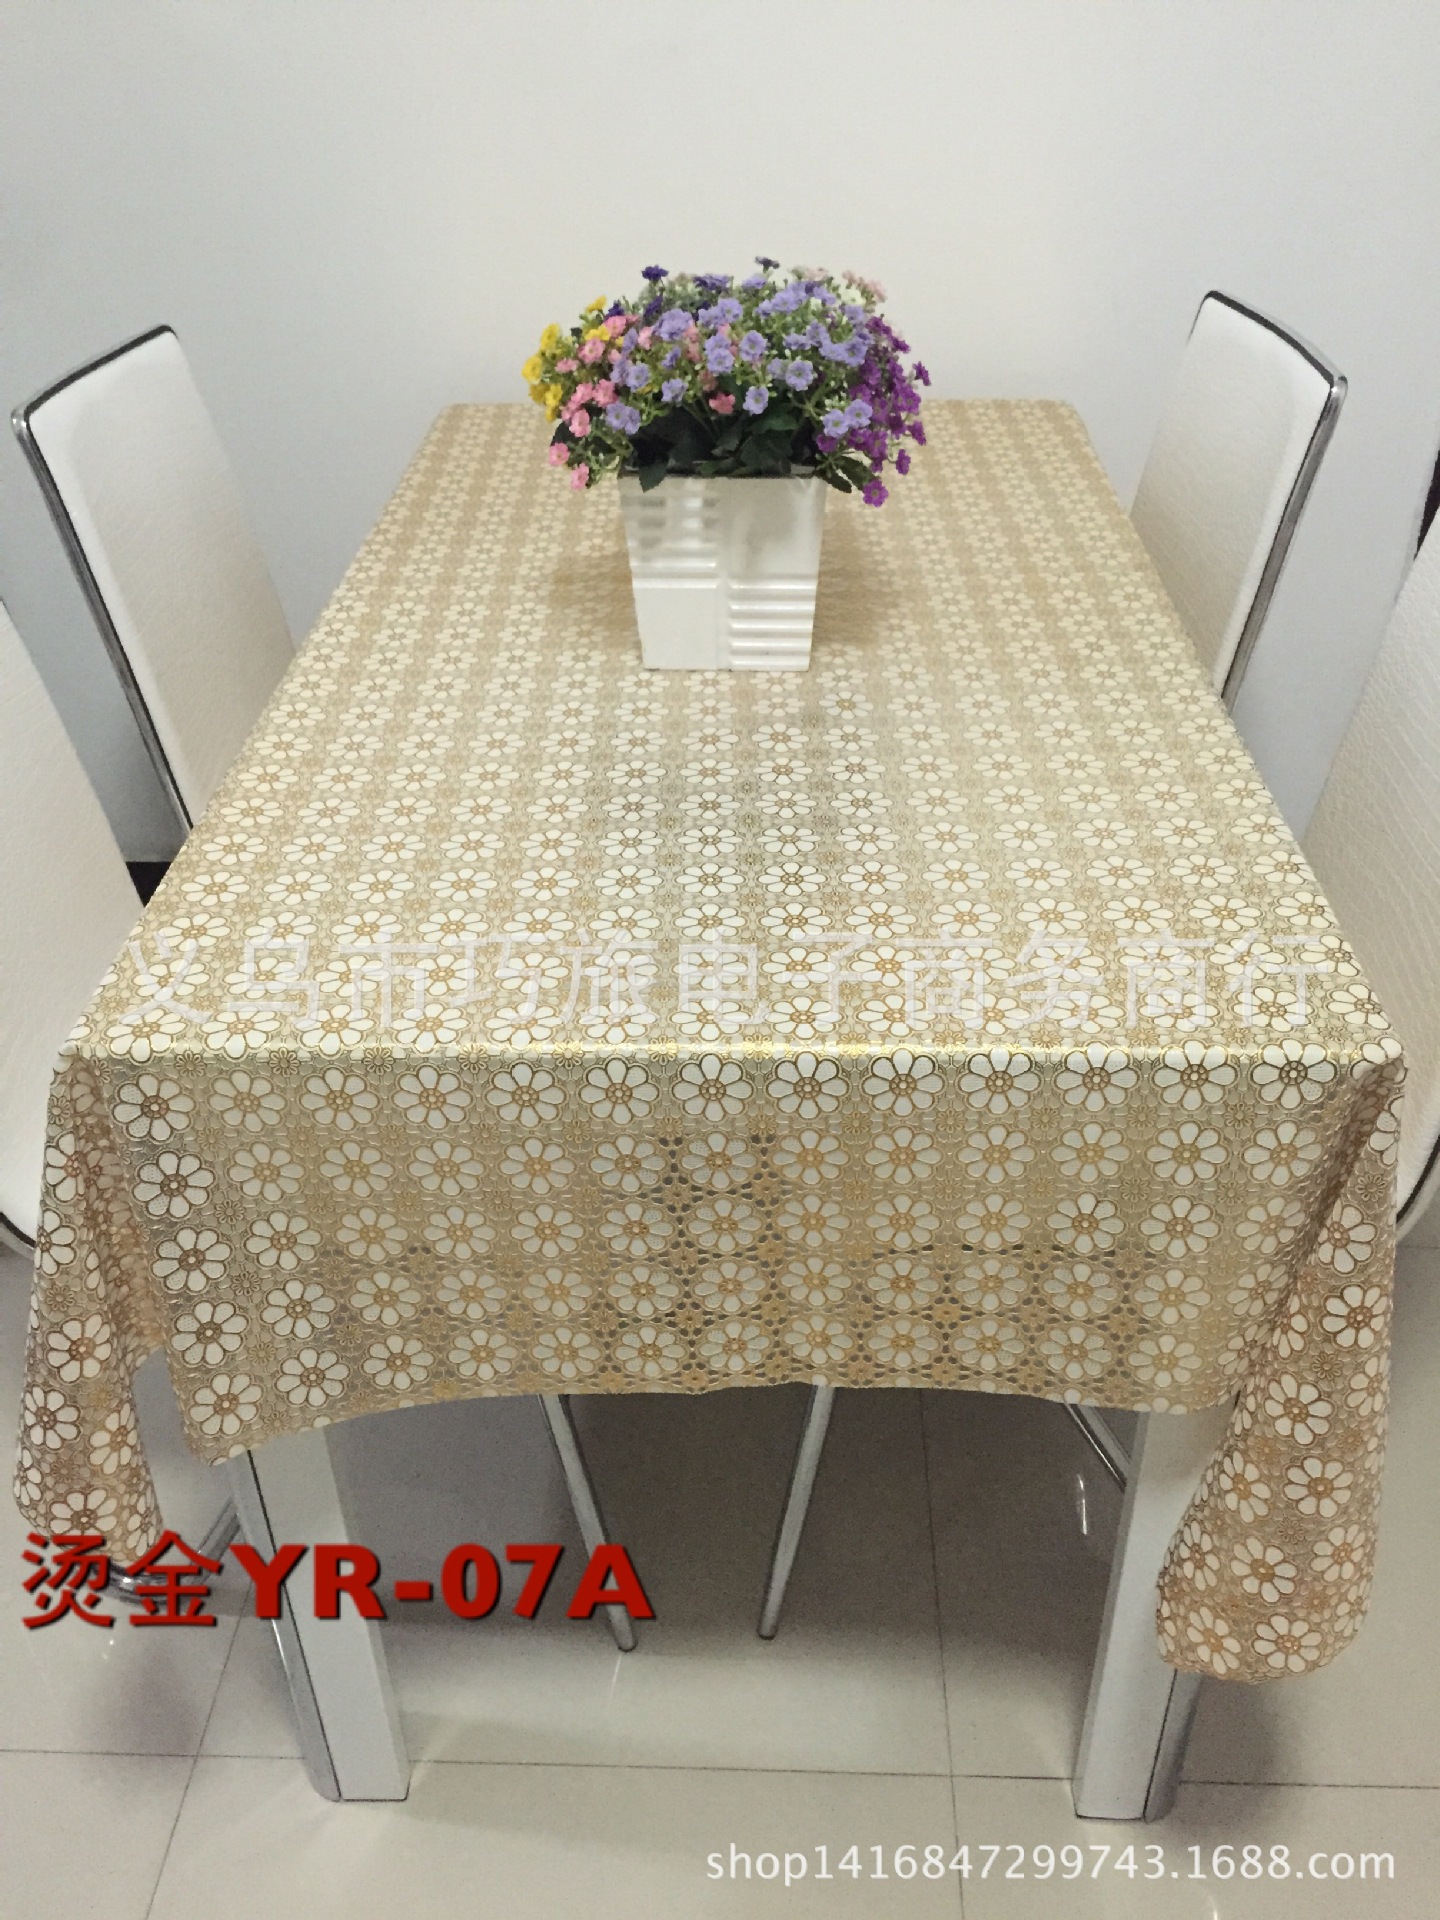 高档烫金欧式塑料桌布 pvc台布 防水防烫防油餐桌布YR-13A详情图2